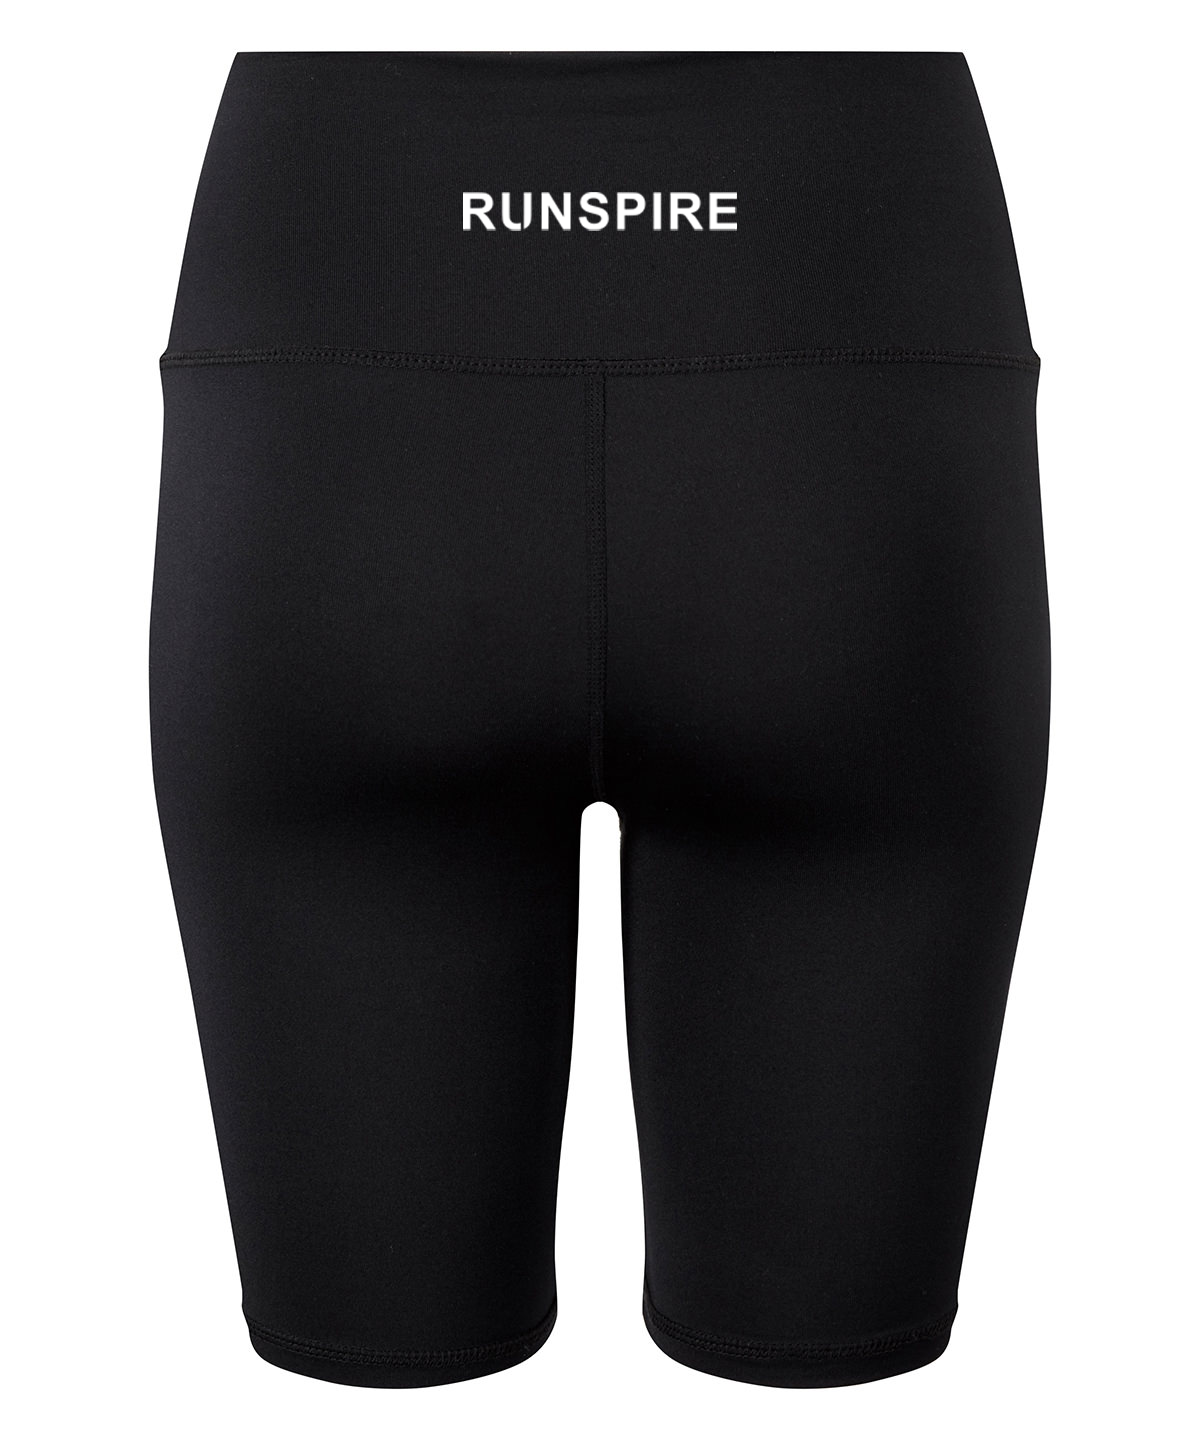 Runspire Women’s Legging Shorts